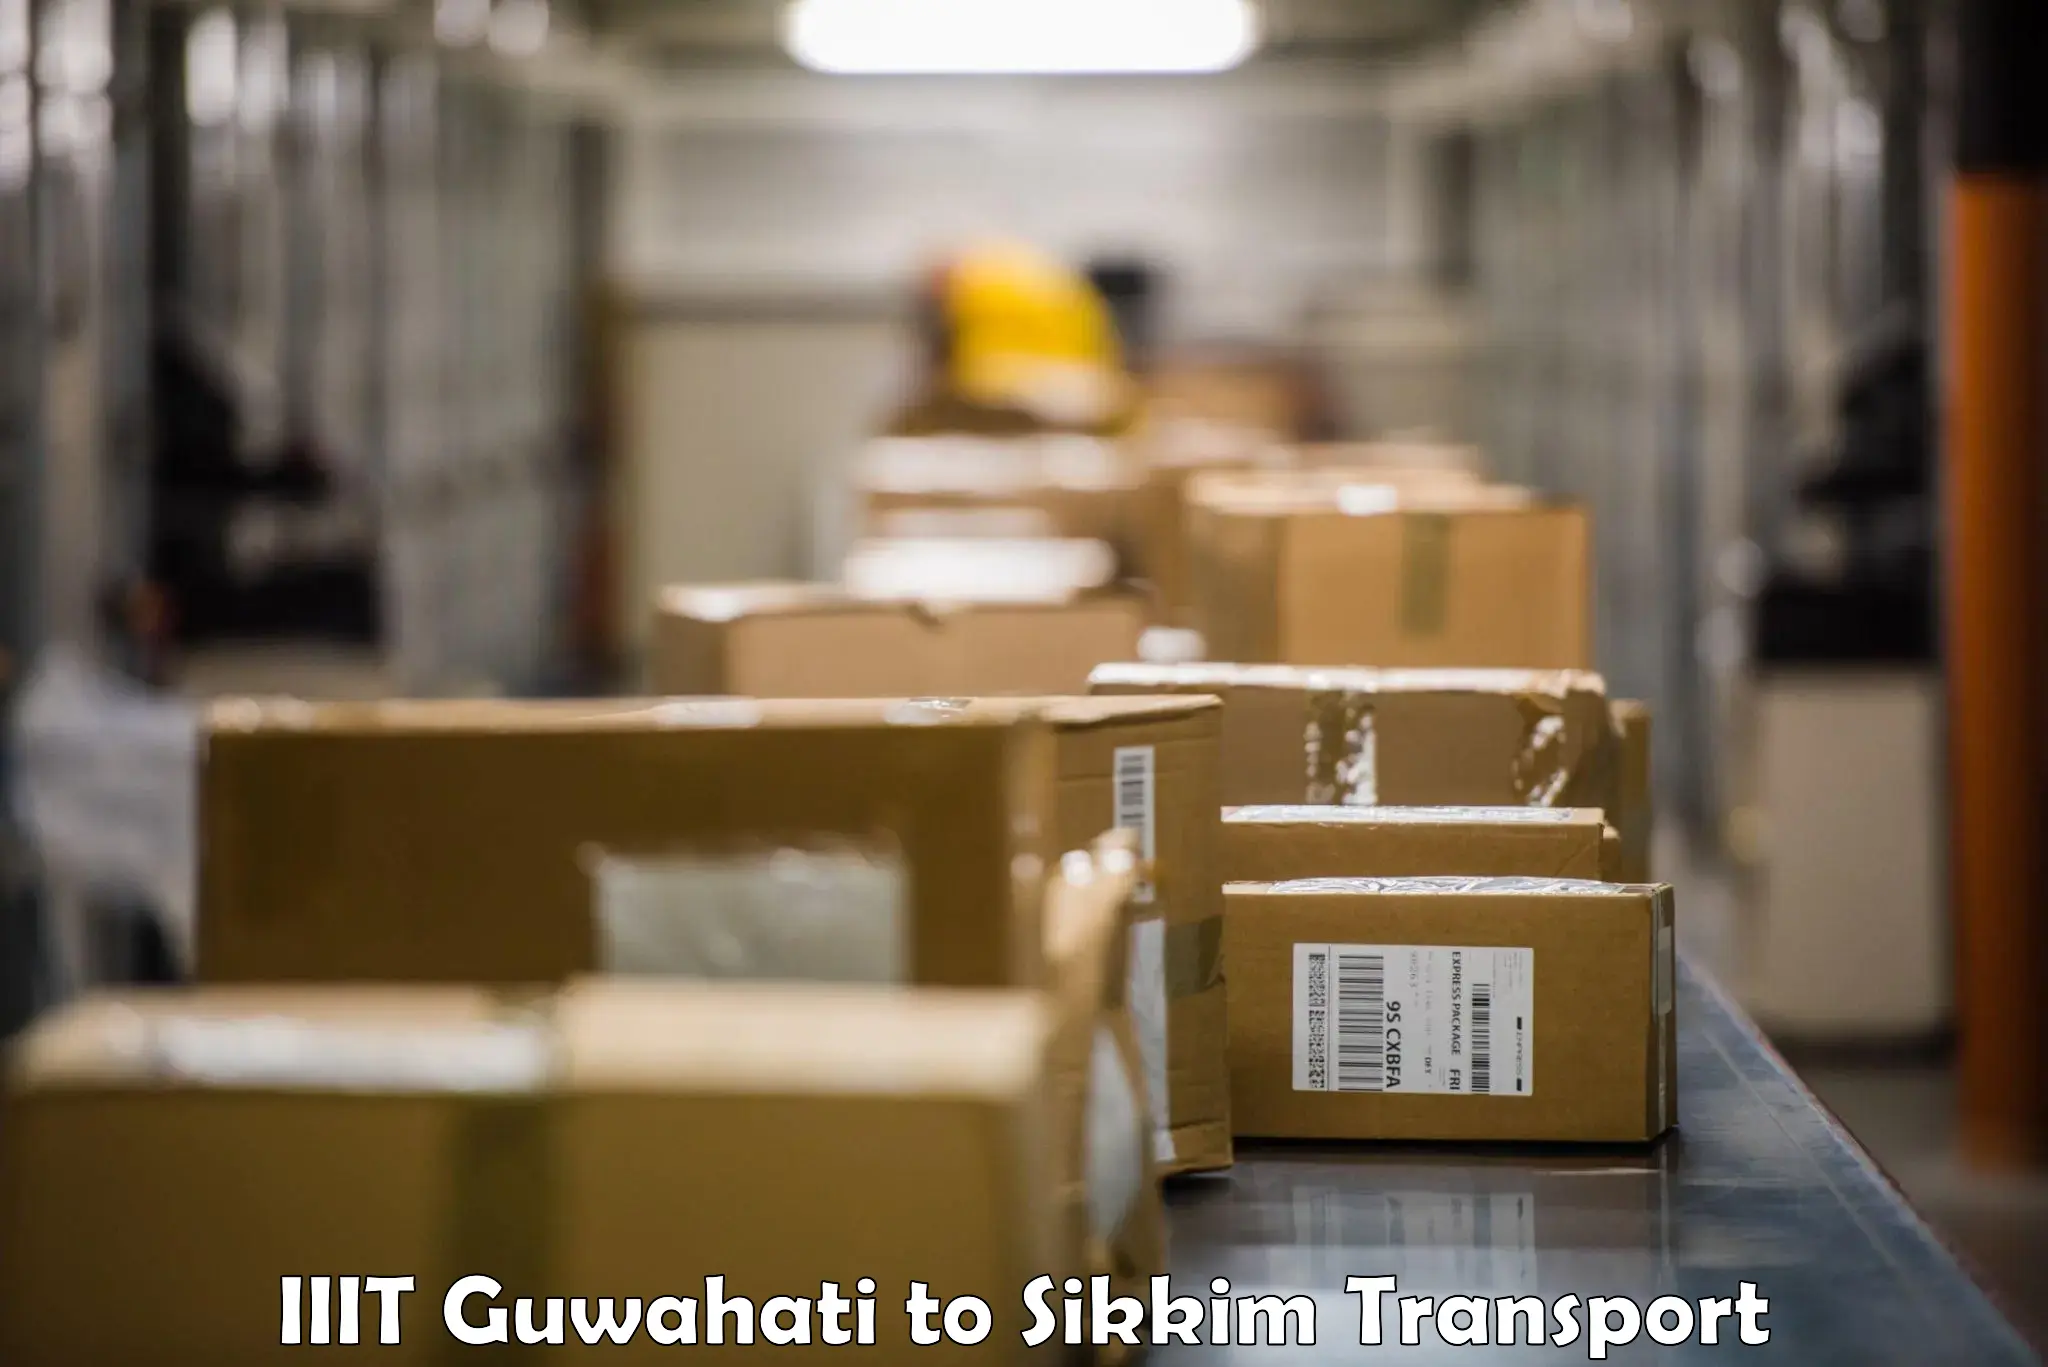 Furniture transport service IIIT Guwahati to Rangpo